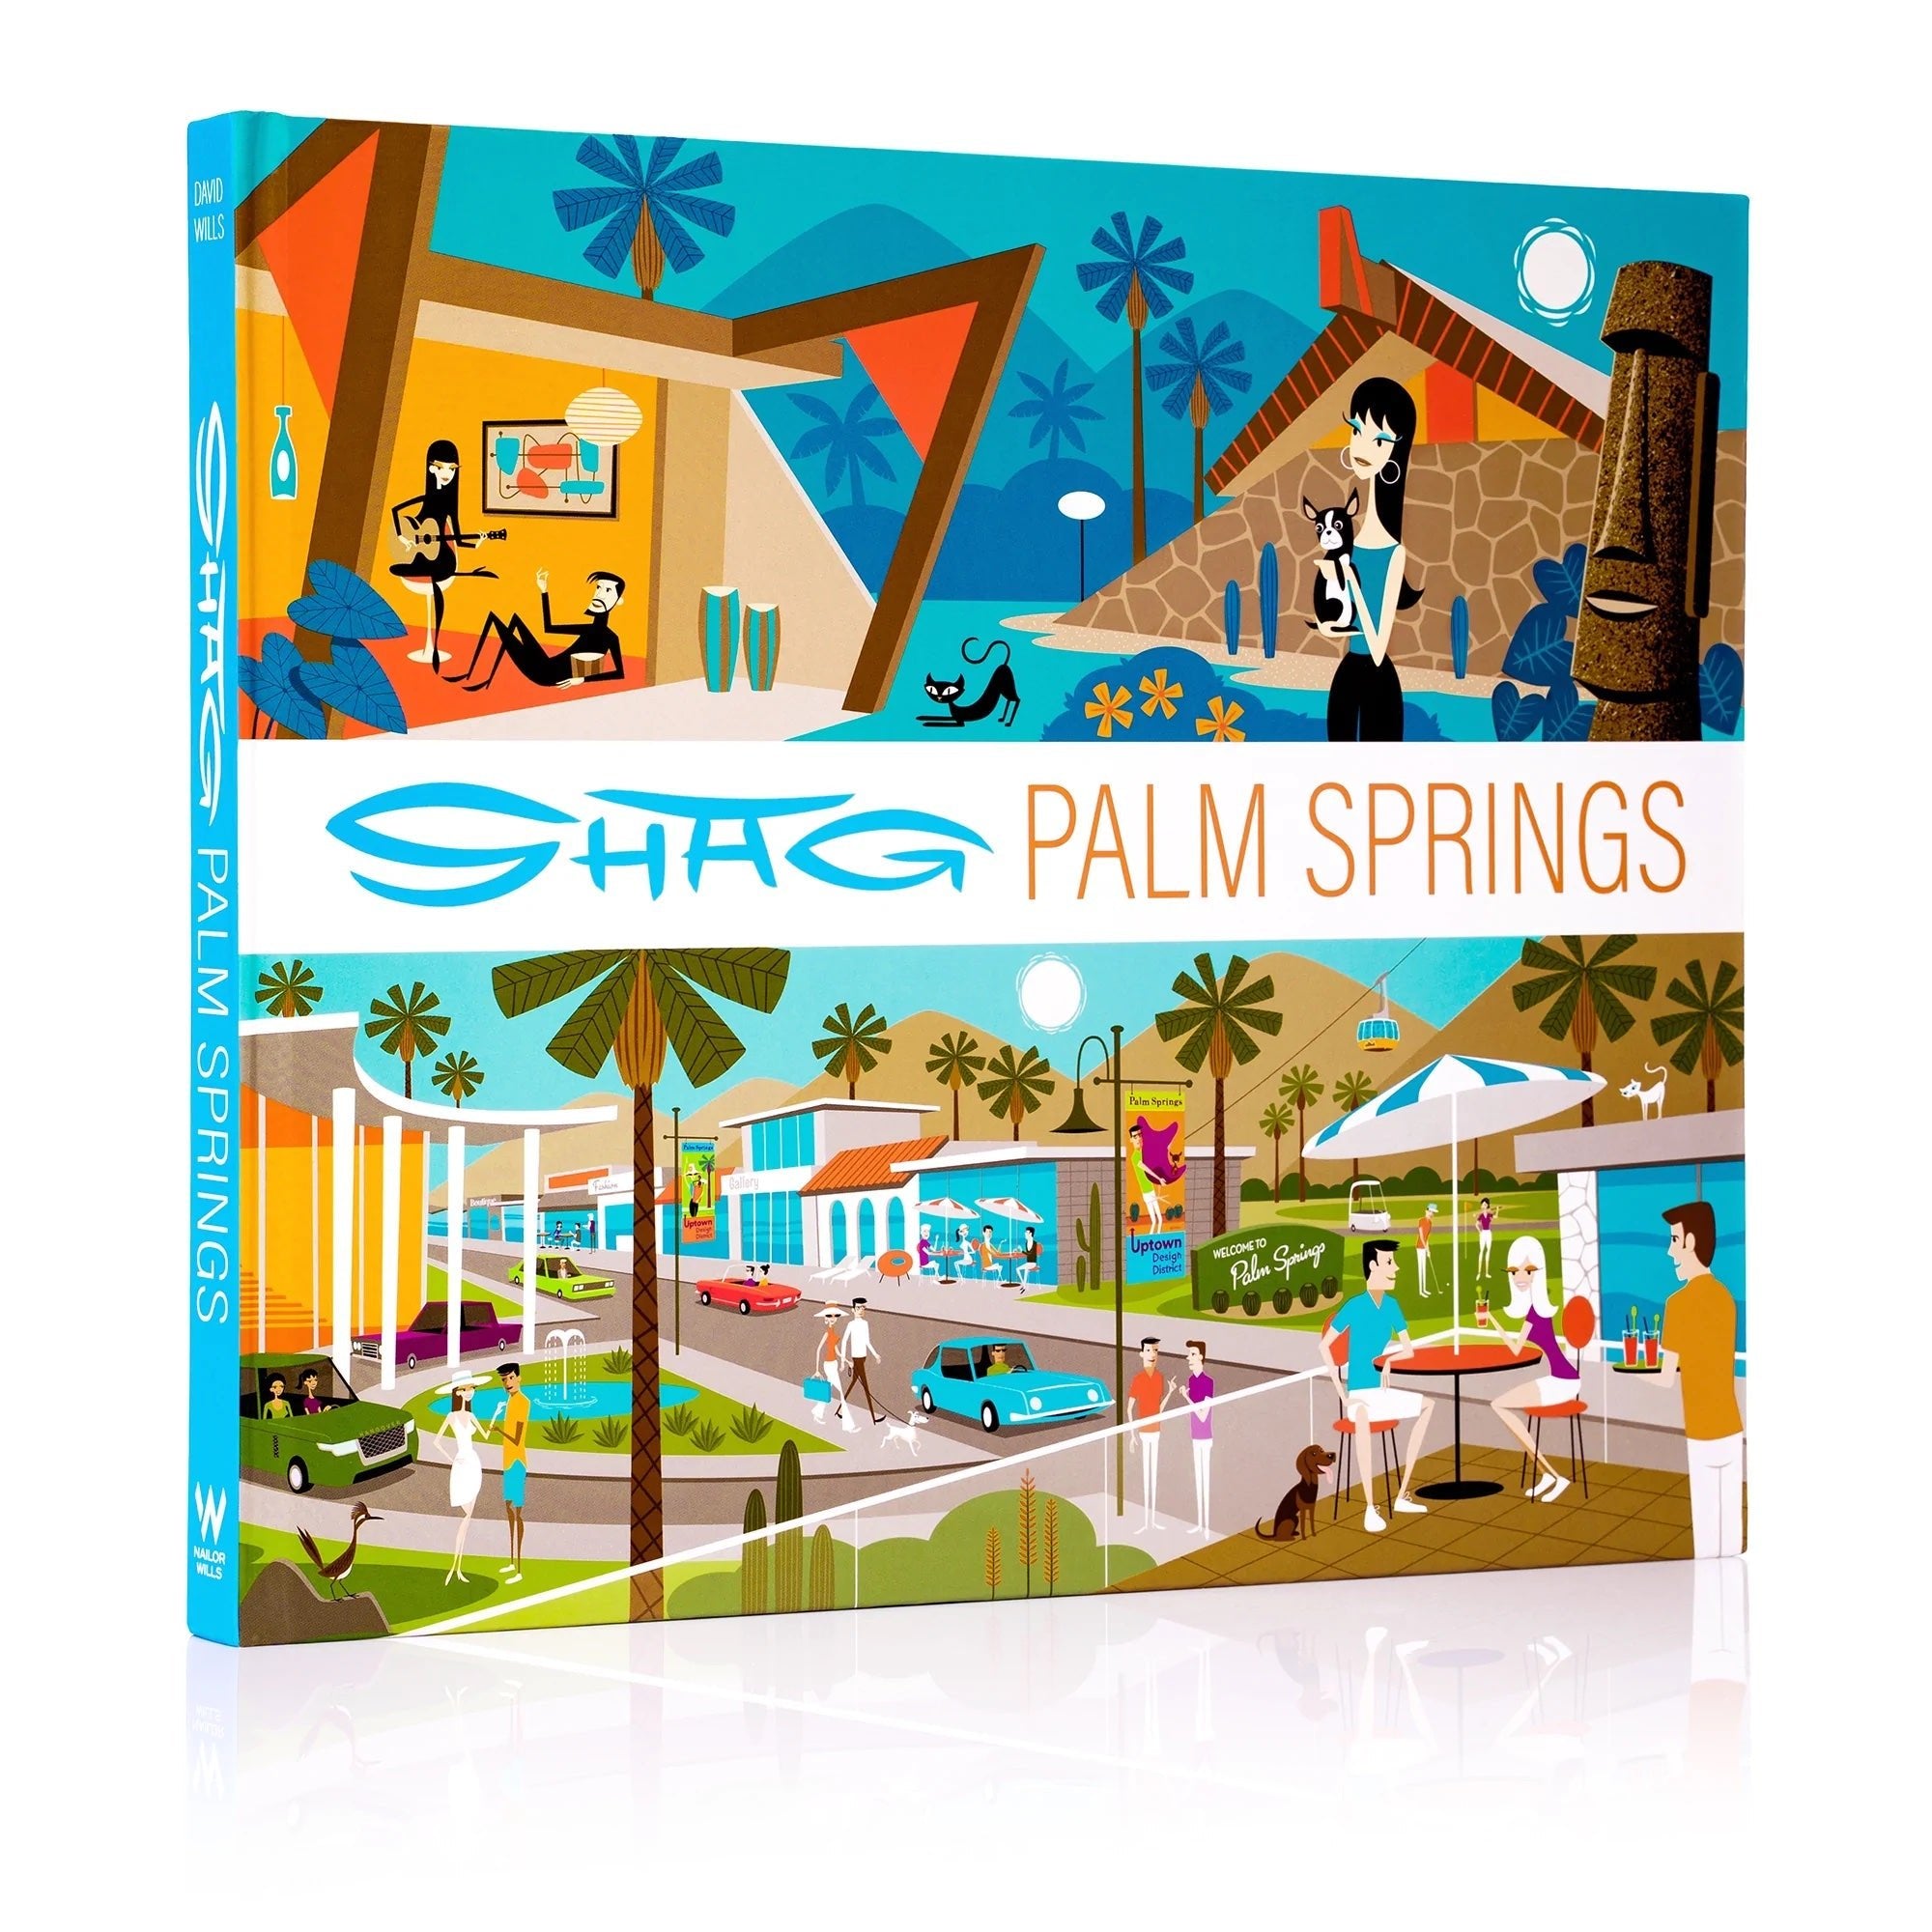 Shag: Palm Springs - Destination PSP